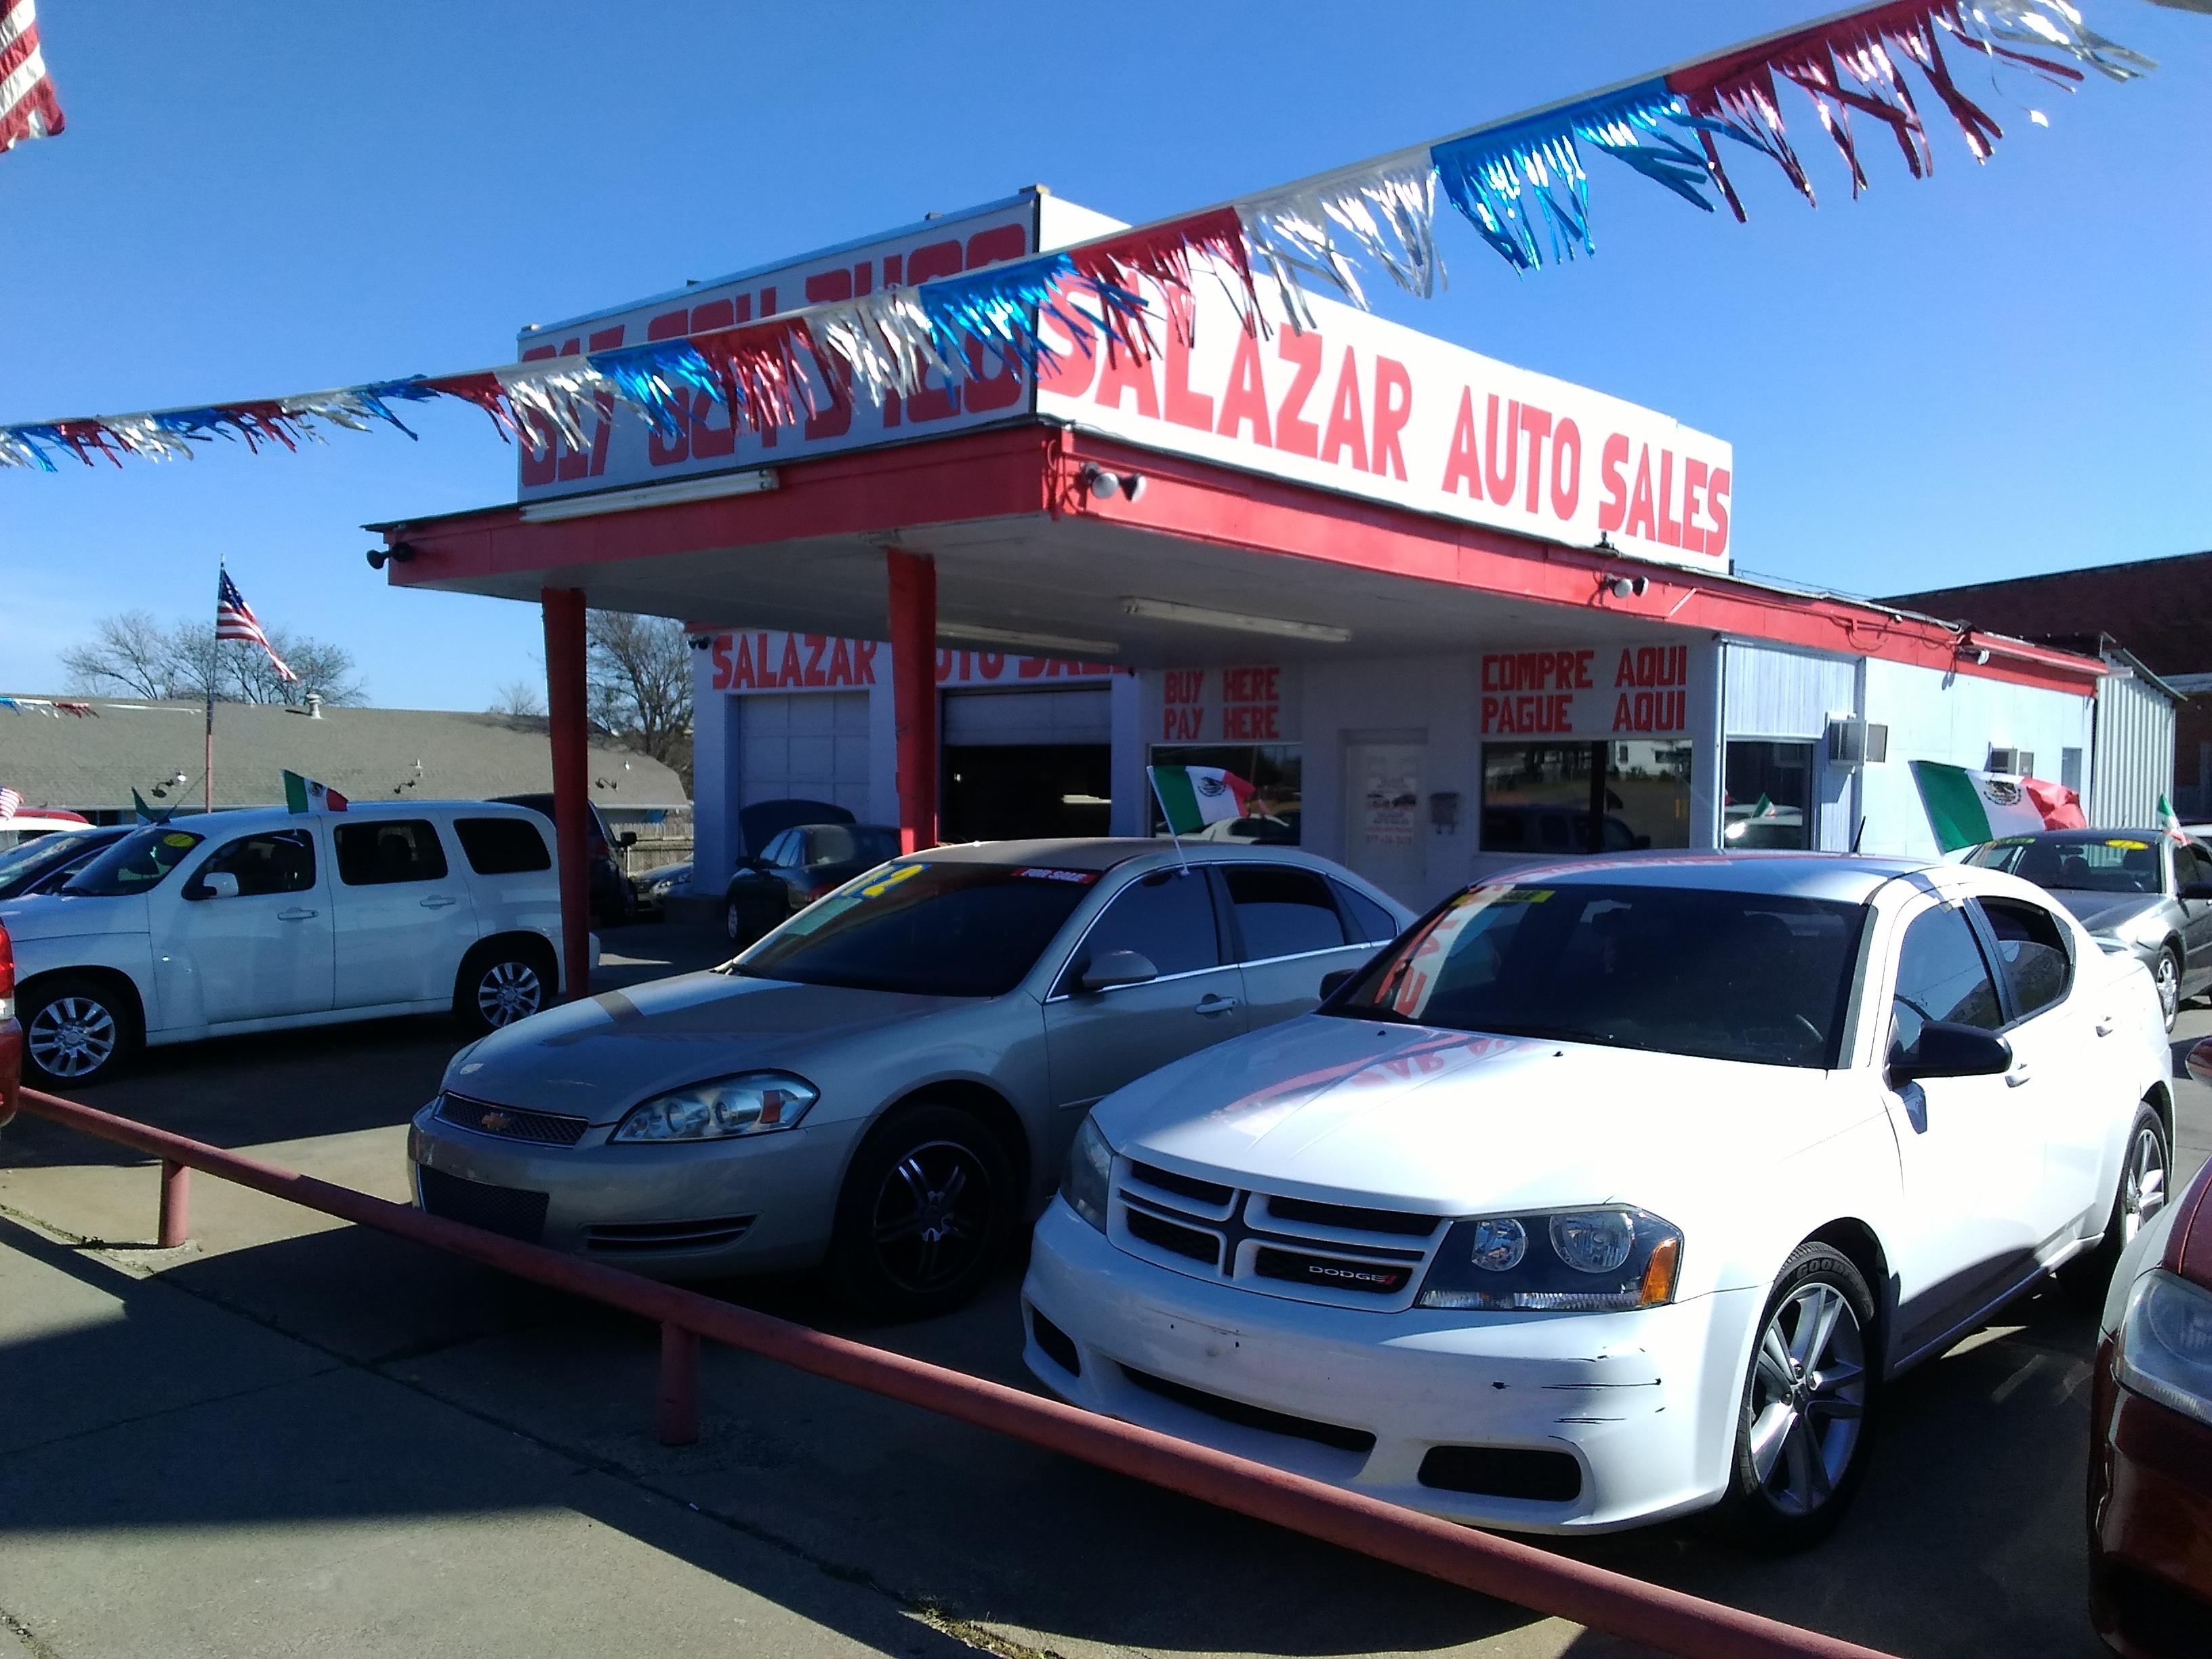 Salazar Auto Sales Photo